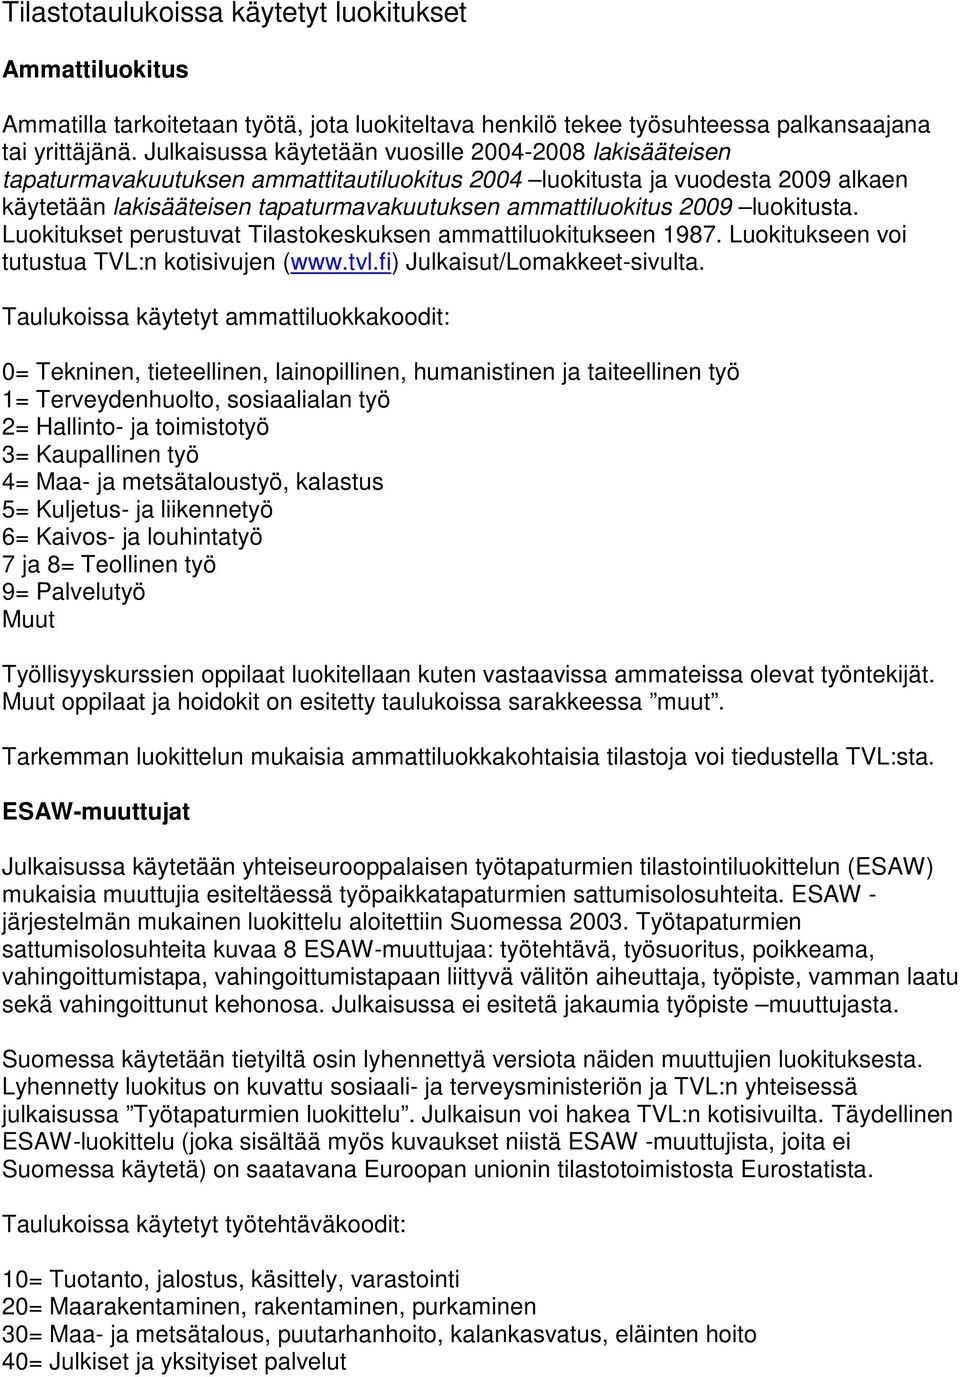 2009 luokitusta. Luokitukset perustuvat Tilastokeskuksen ammattiluokitukseen 1987. Luokitukseen voi tutustua TVL:n kotisivujen (www.tvl.fi) Julkaisut/Lomakkeet-sivulta.